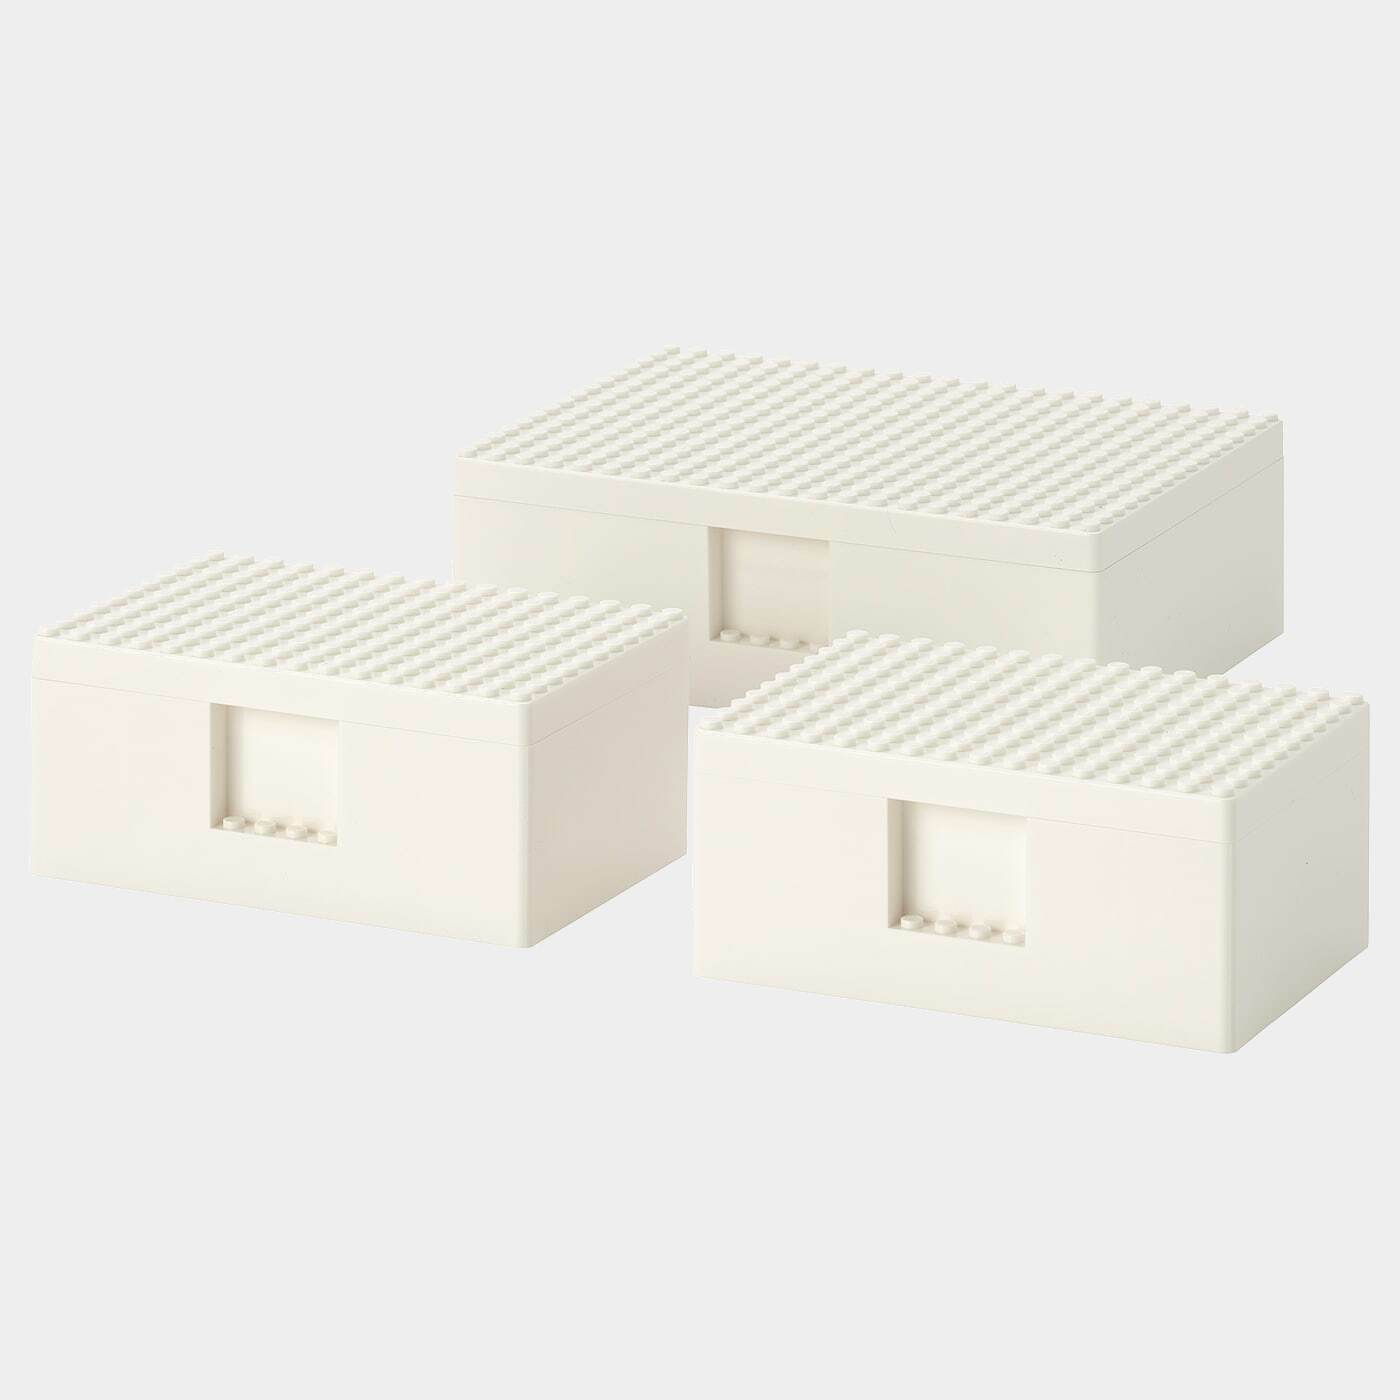 BYGGLEK LEGO®-Schachtel mit Deckel 3er-Set  -  - Möbel Ideen für dein Zuhause von Home Trends. Möbel Trends von Social Media Influencer für dein Skandi Zuhause.